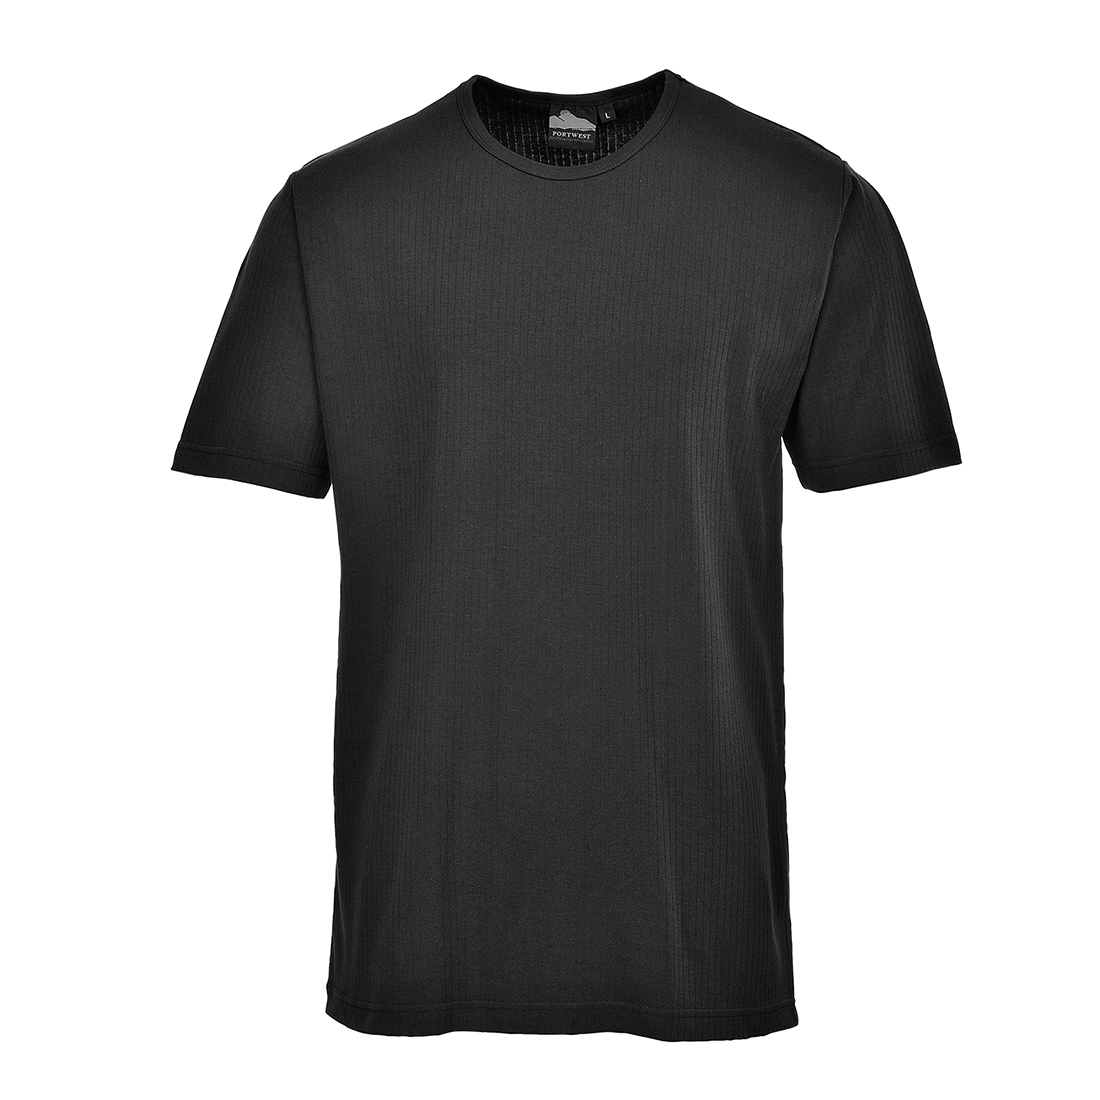 Beispielbild des Kurzarm Thermo-Shirts B120 in Schwarz mit hinterlegtem Link zum Artikel.